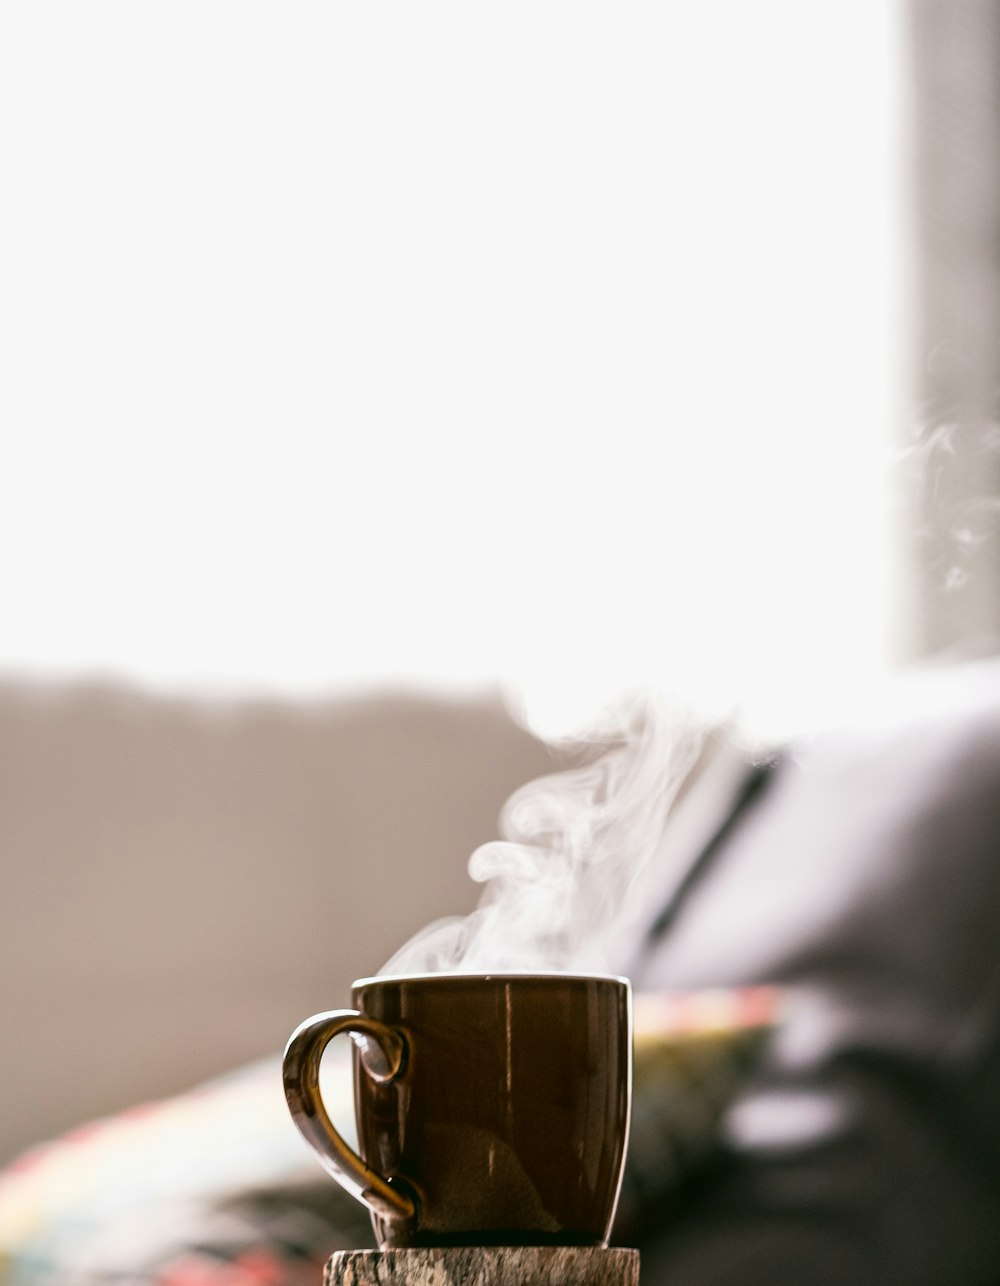 ソーサー付きマグカップのホットコーヒーの浅い焦点写真